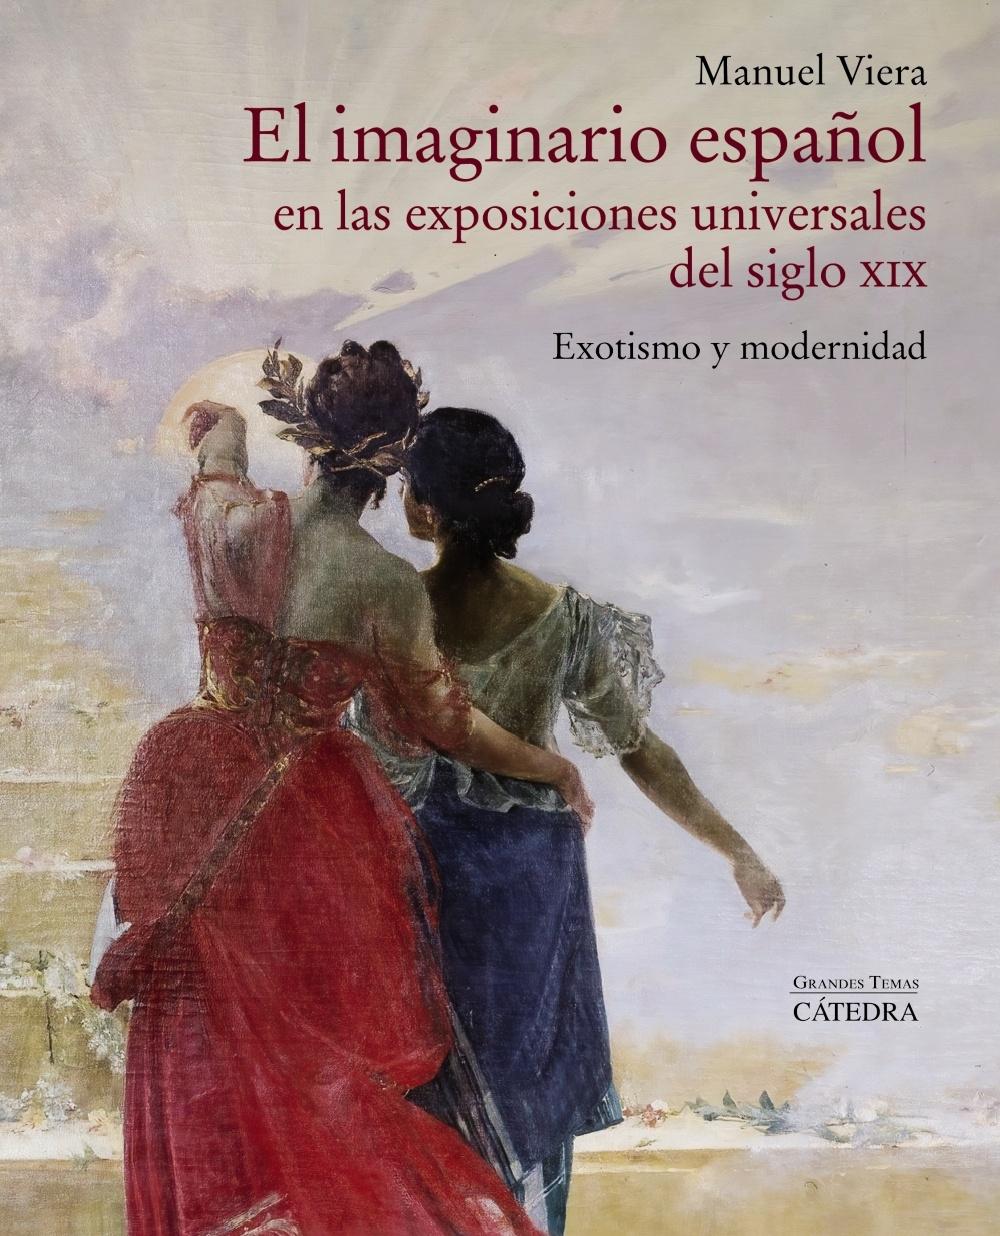 El imaginario español en las exposiciones universales del siglo XIX "Exotismo y modernidad". 